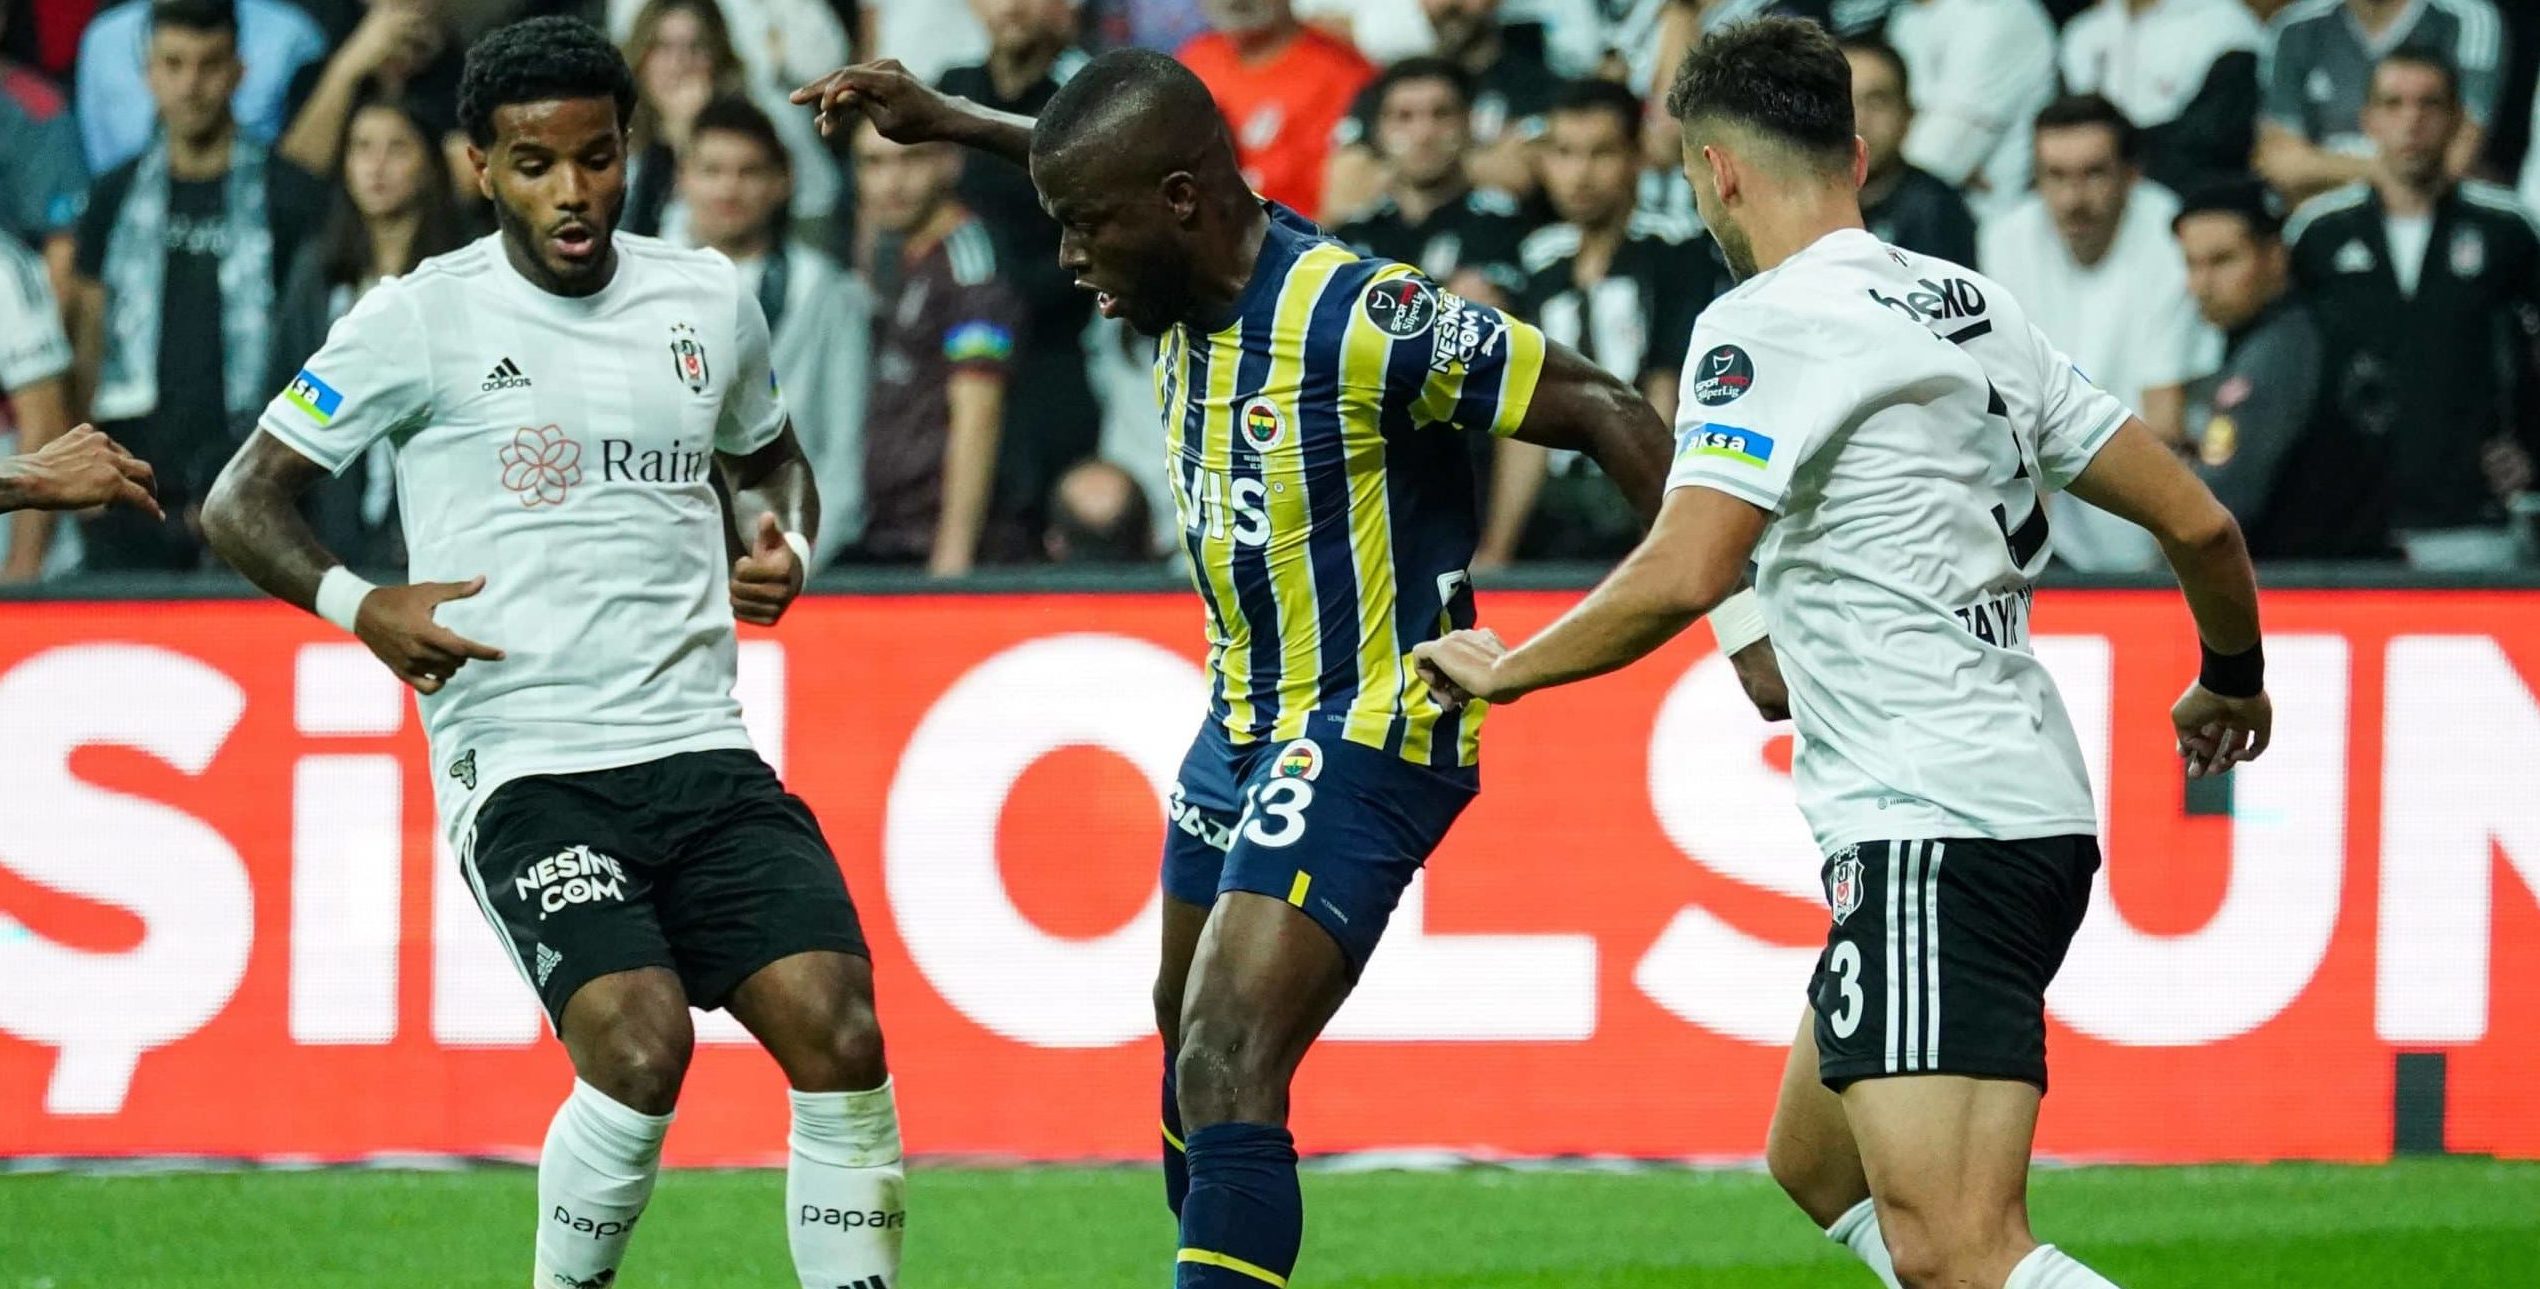 Ankaragücü vs Fenerbahçe: A Clash of Titans